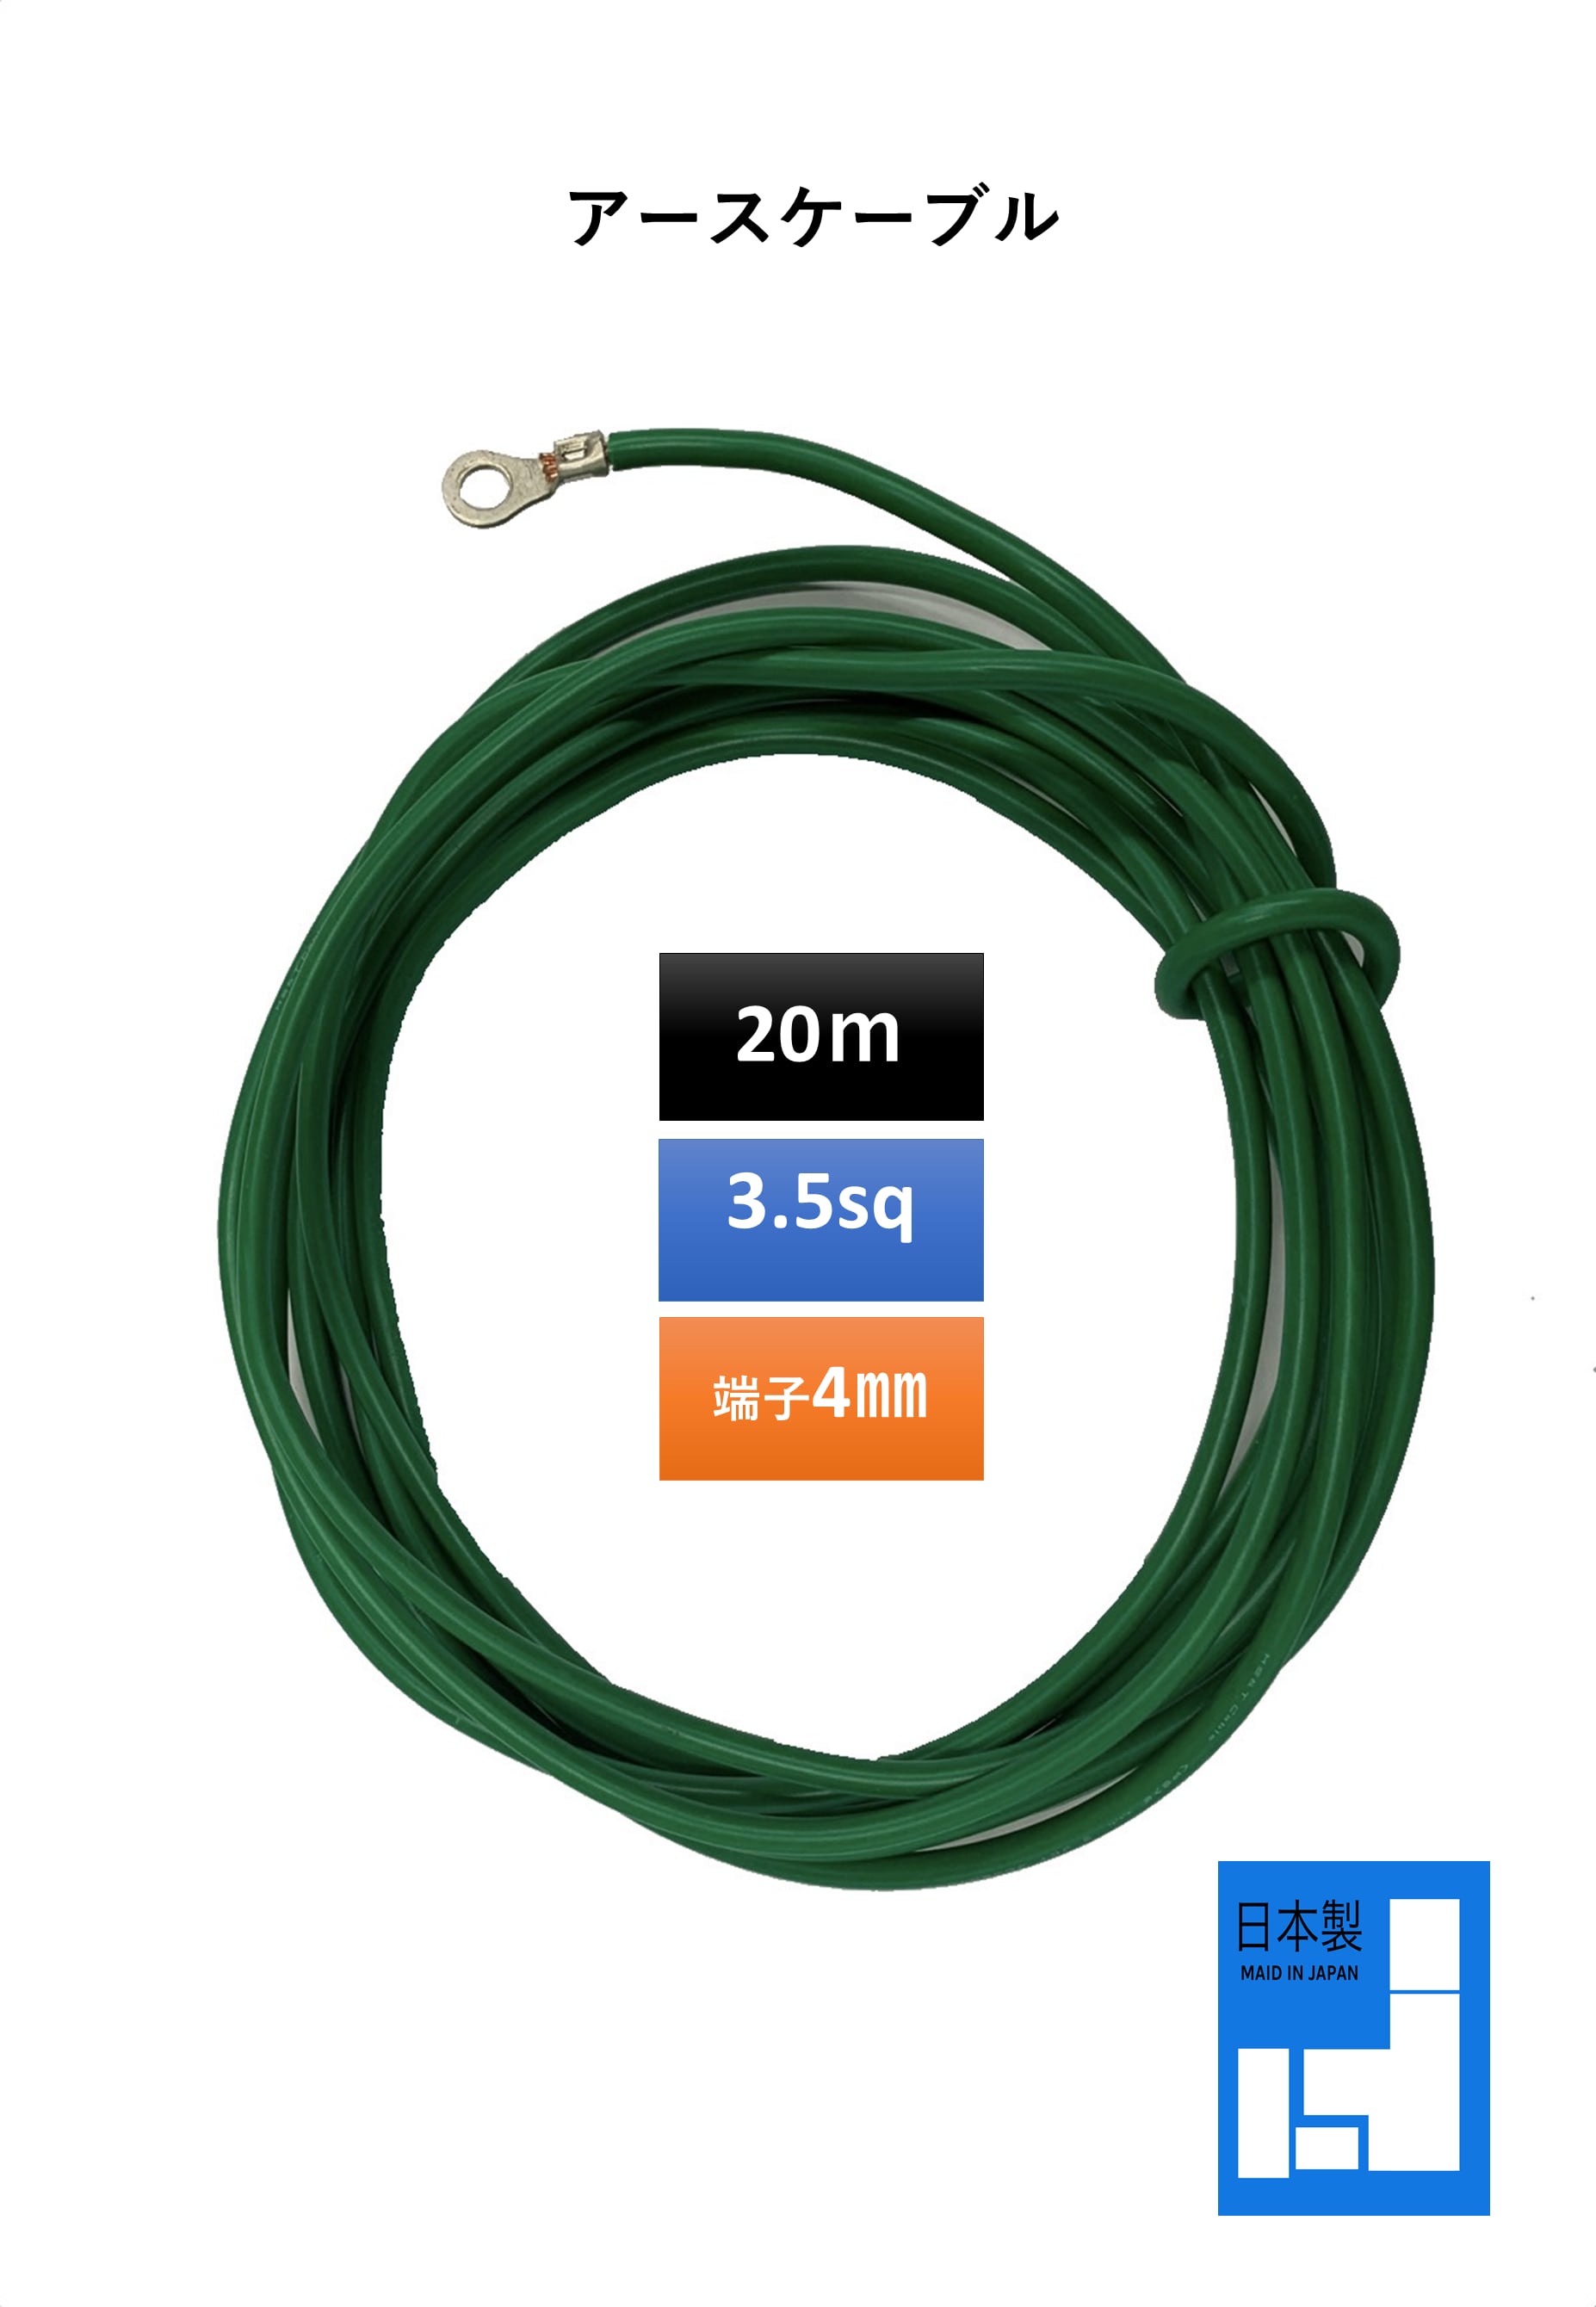 海外限定】 フジクラダイヤケーブル EM-IE5.5SQ 屋内用絶縁電線 600Ｖ耐燃性ポリエチレン絶縁電線 より線 色 緑 切売 10mから 